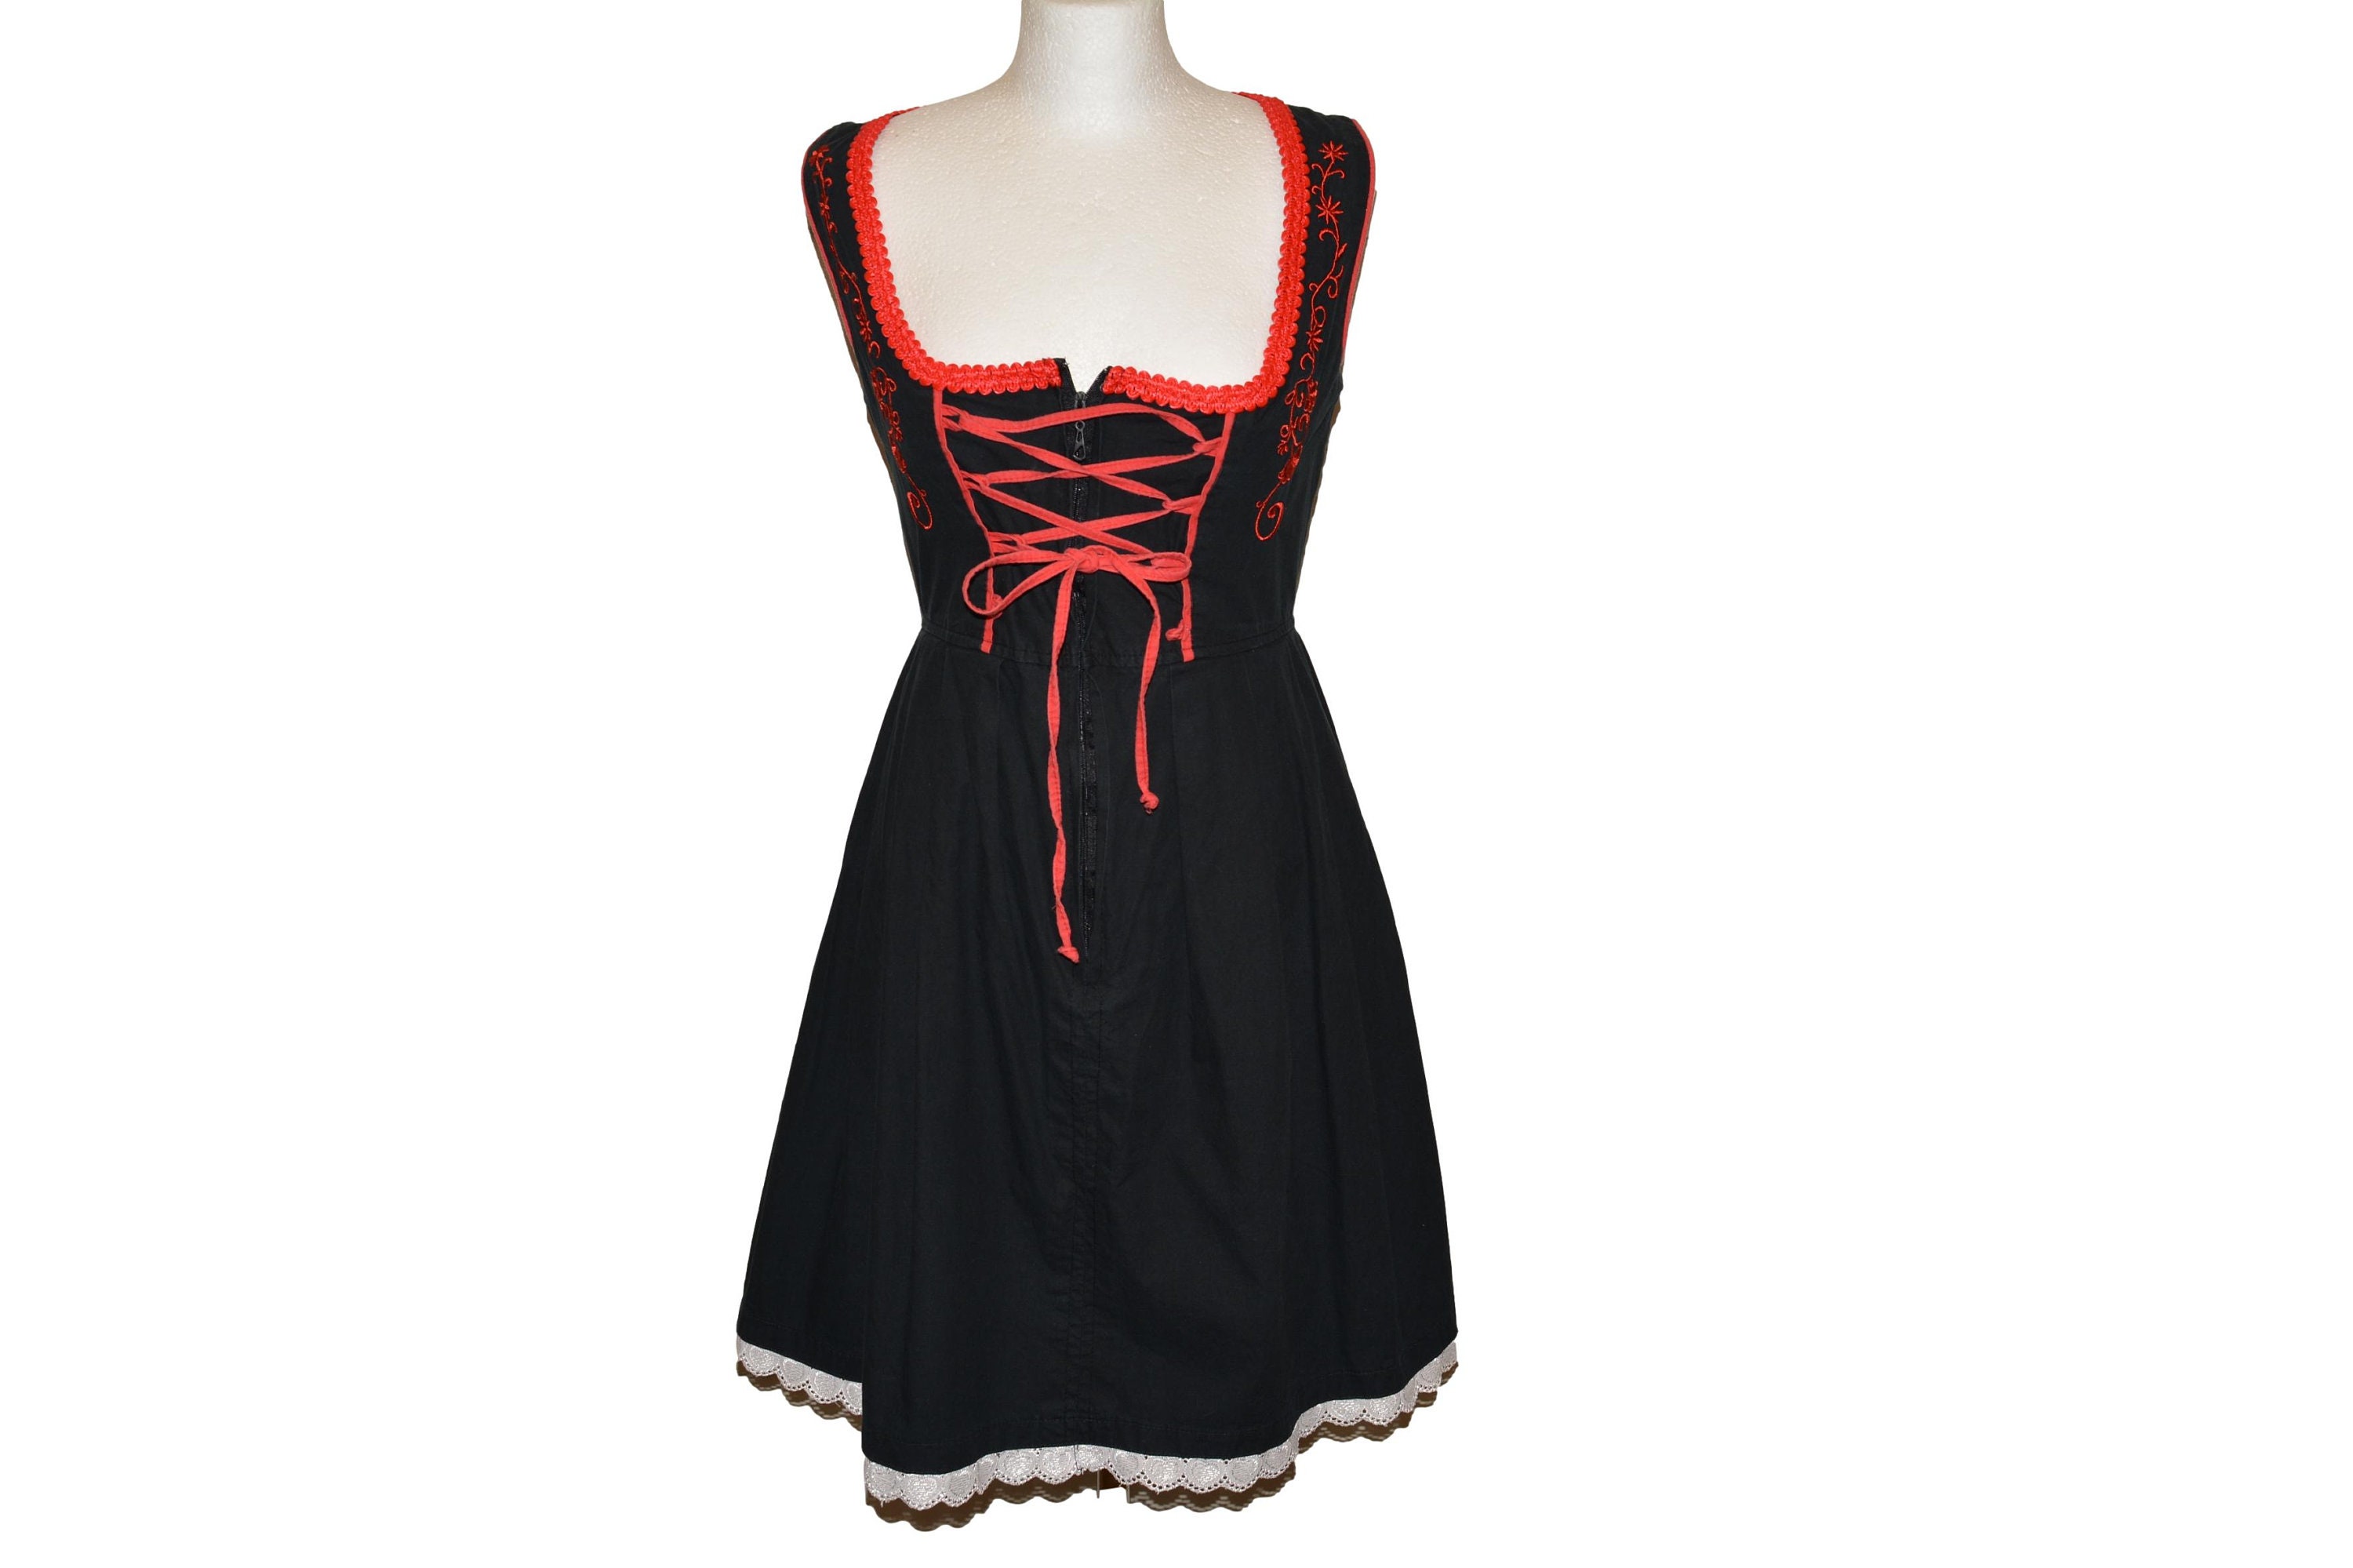 Vintage Aprons, Retro Aprons, Old Fashioned Aprons & Patterns Black Red Embroidered Apron Dress Vintage Dirndl Oktoberfest Size Xs $2,172.00 AT vintagedancer.com